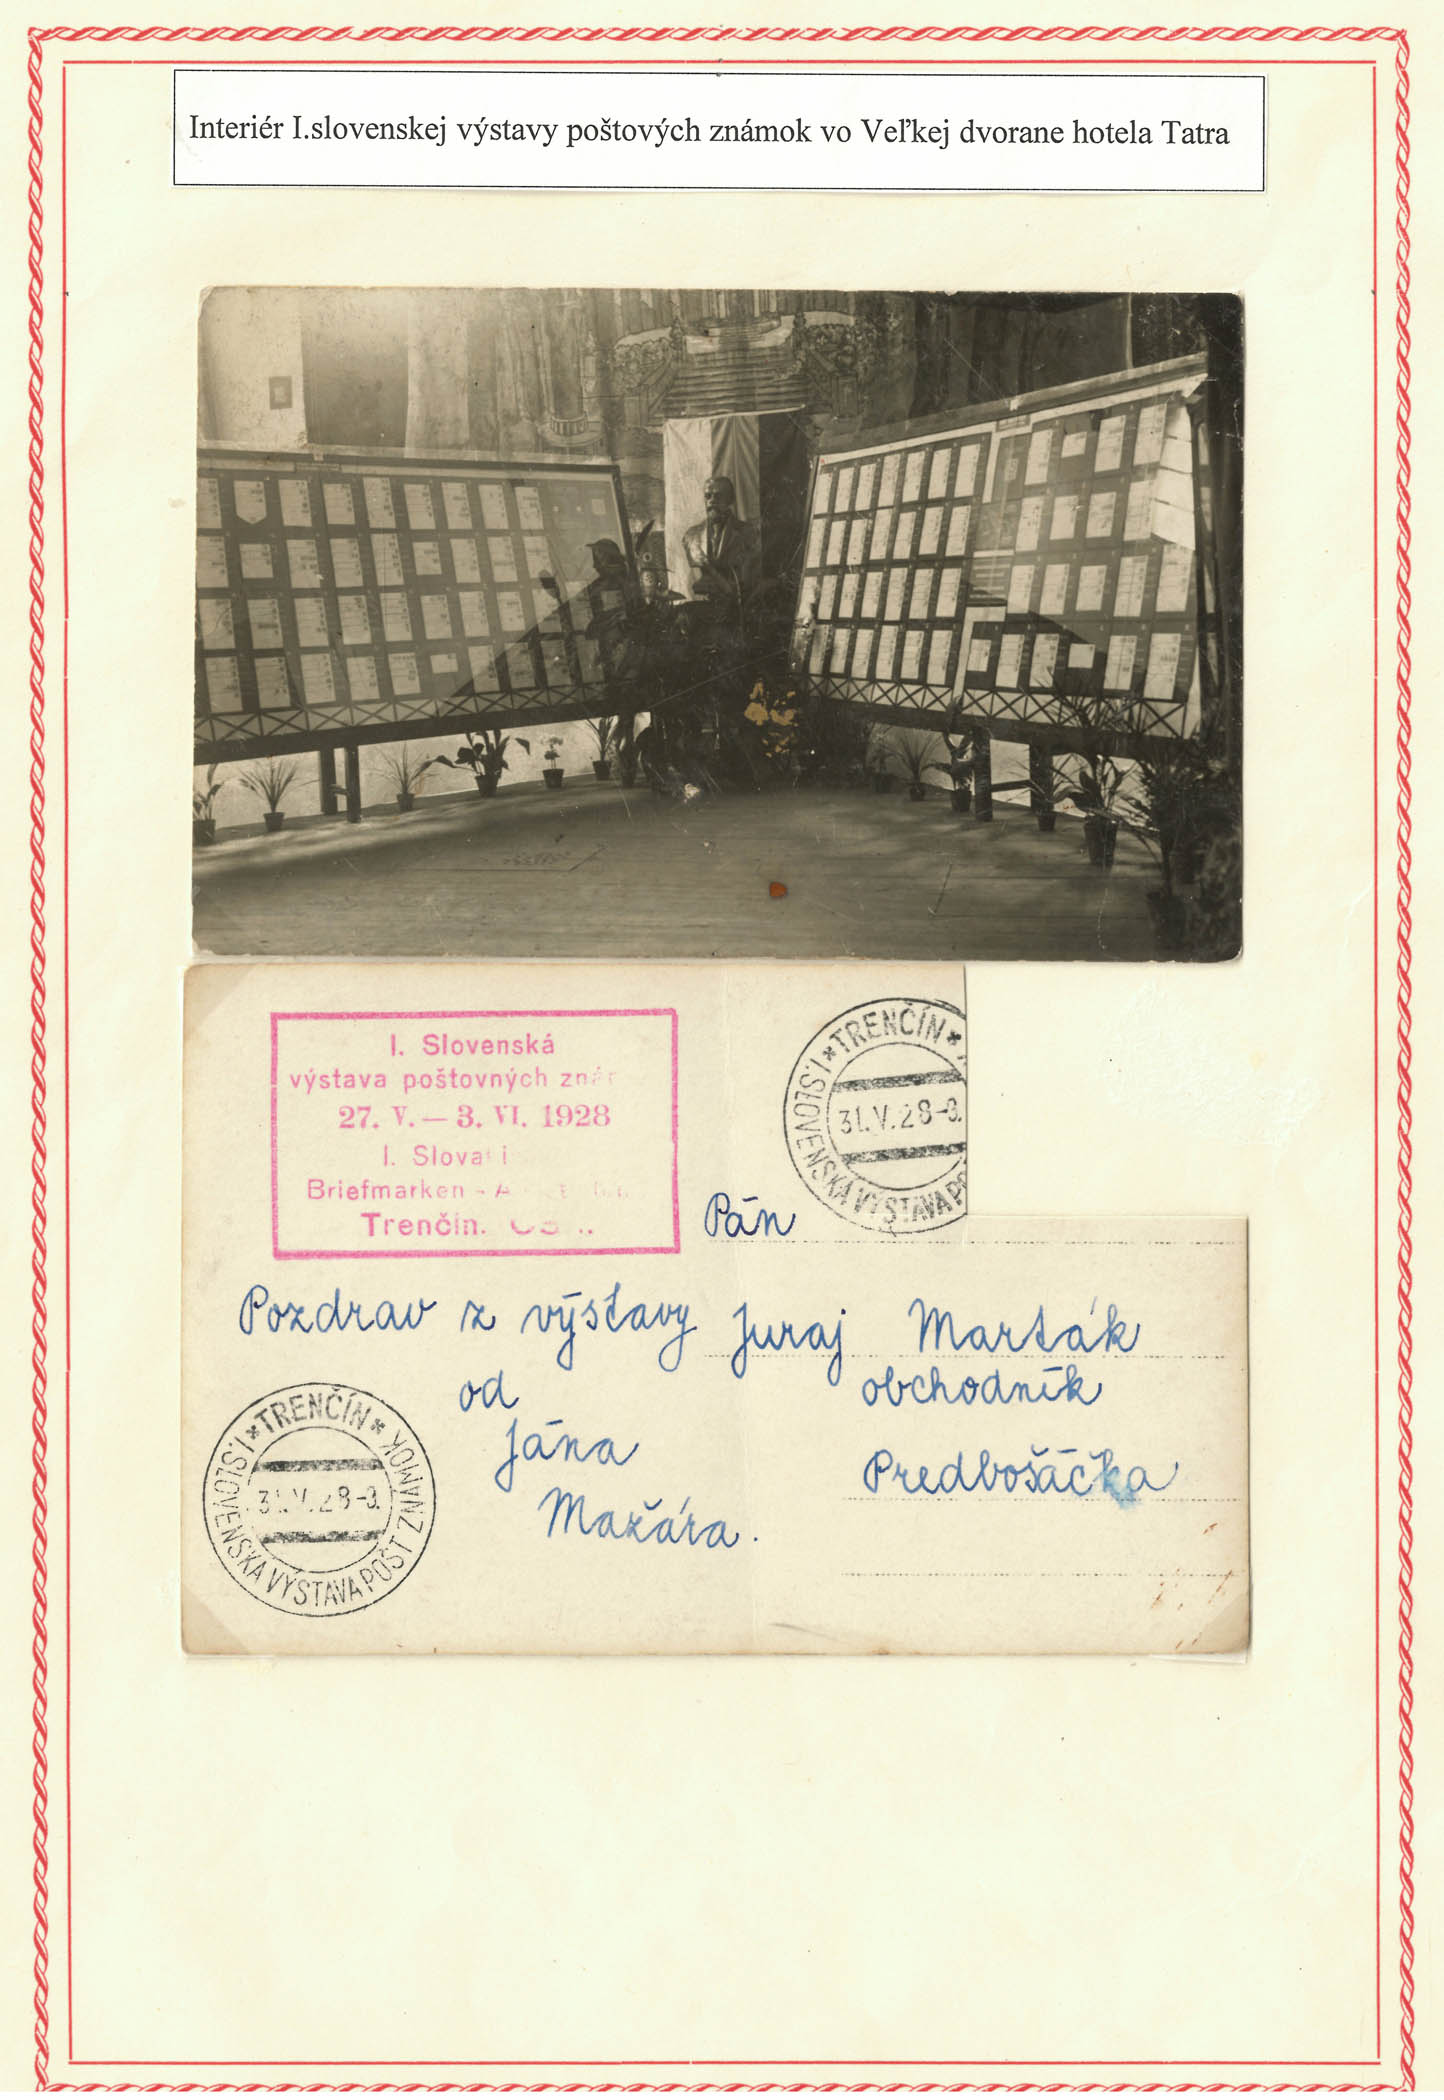 Obrázok č. 1: Interiér I. slovenskej výstavy poštových známok vo veľkej dvorane hotela Tatra. Osobný fond Jozef Korený, Štátny archív v Trenčíne.